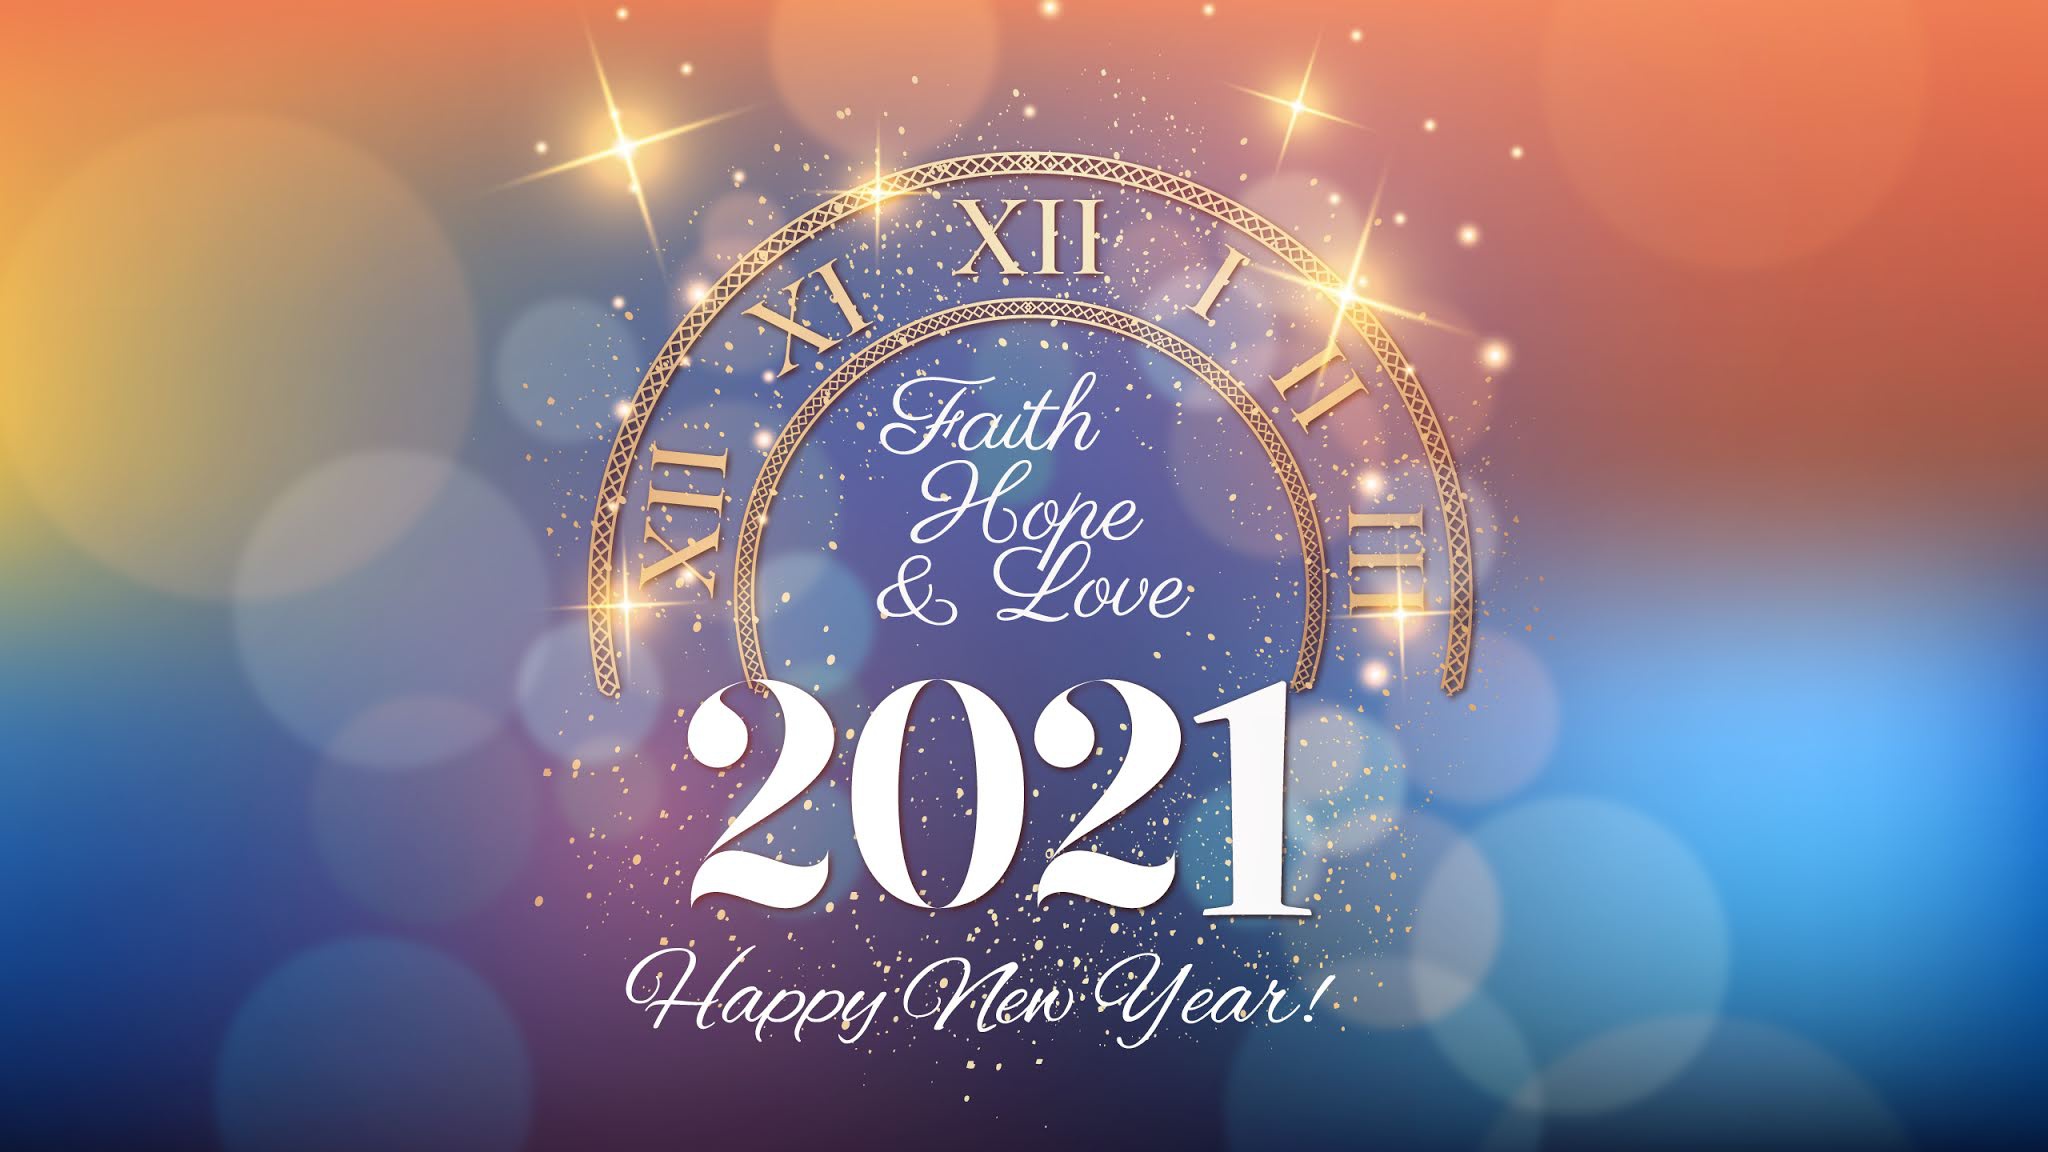 Новый год 2024 бюджетно. С новым годом 2021. Обои на новый год 2021. Счастливого нового года 2021. Новогодние обои Happy New year.